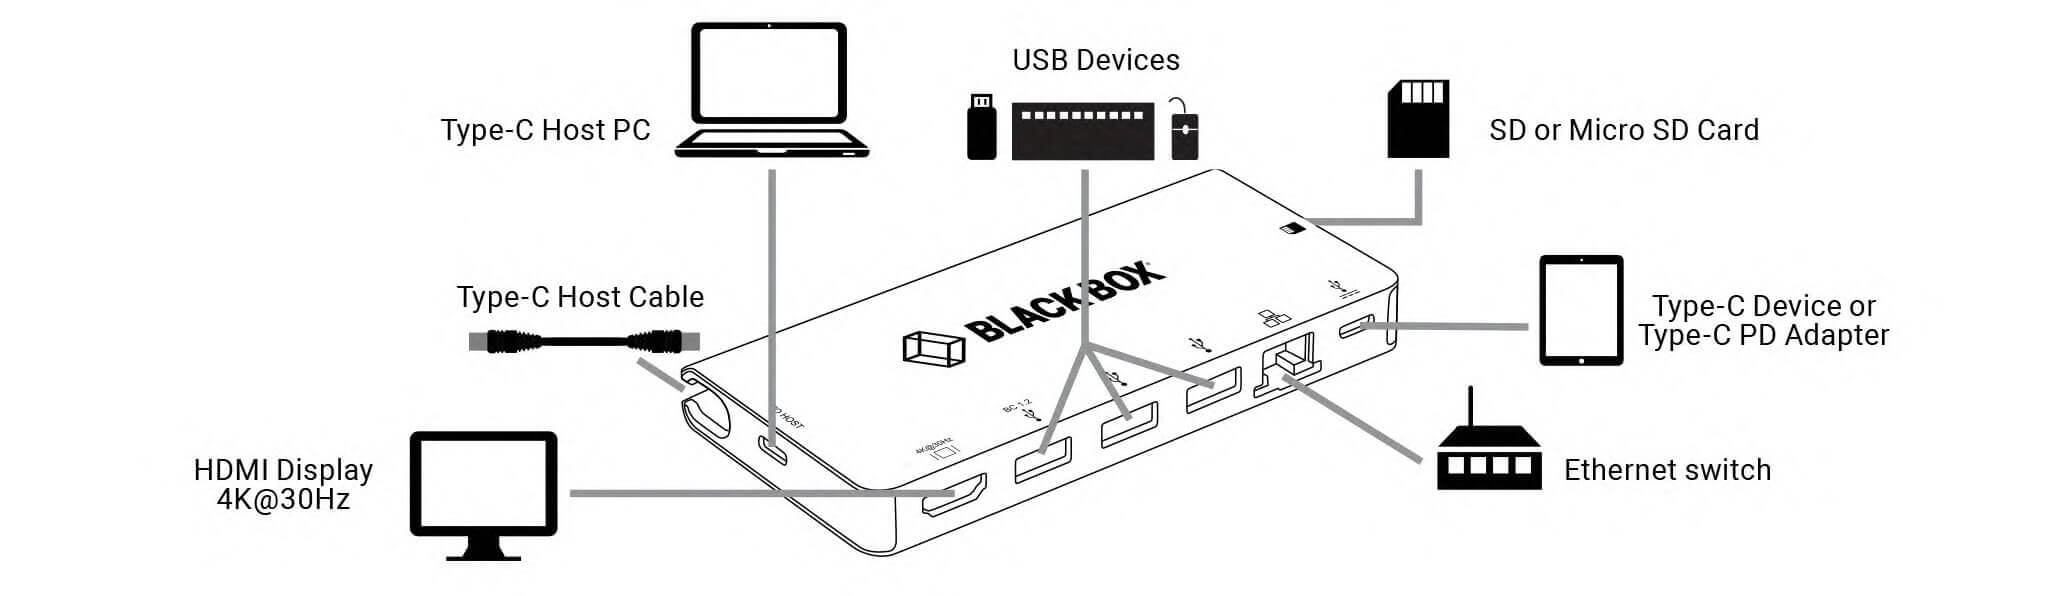 USBC2000-app-diagram